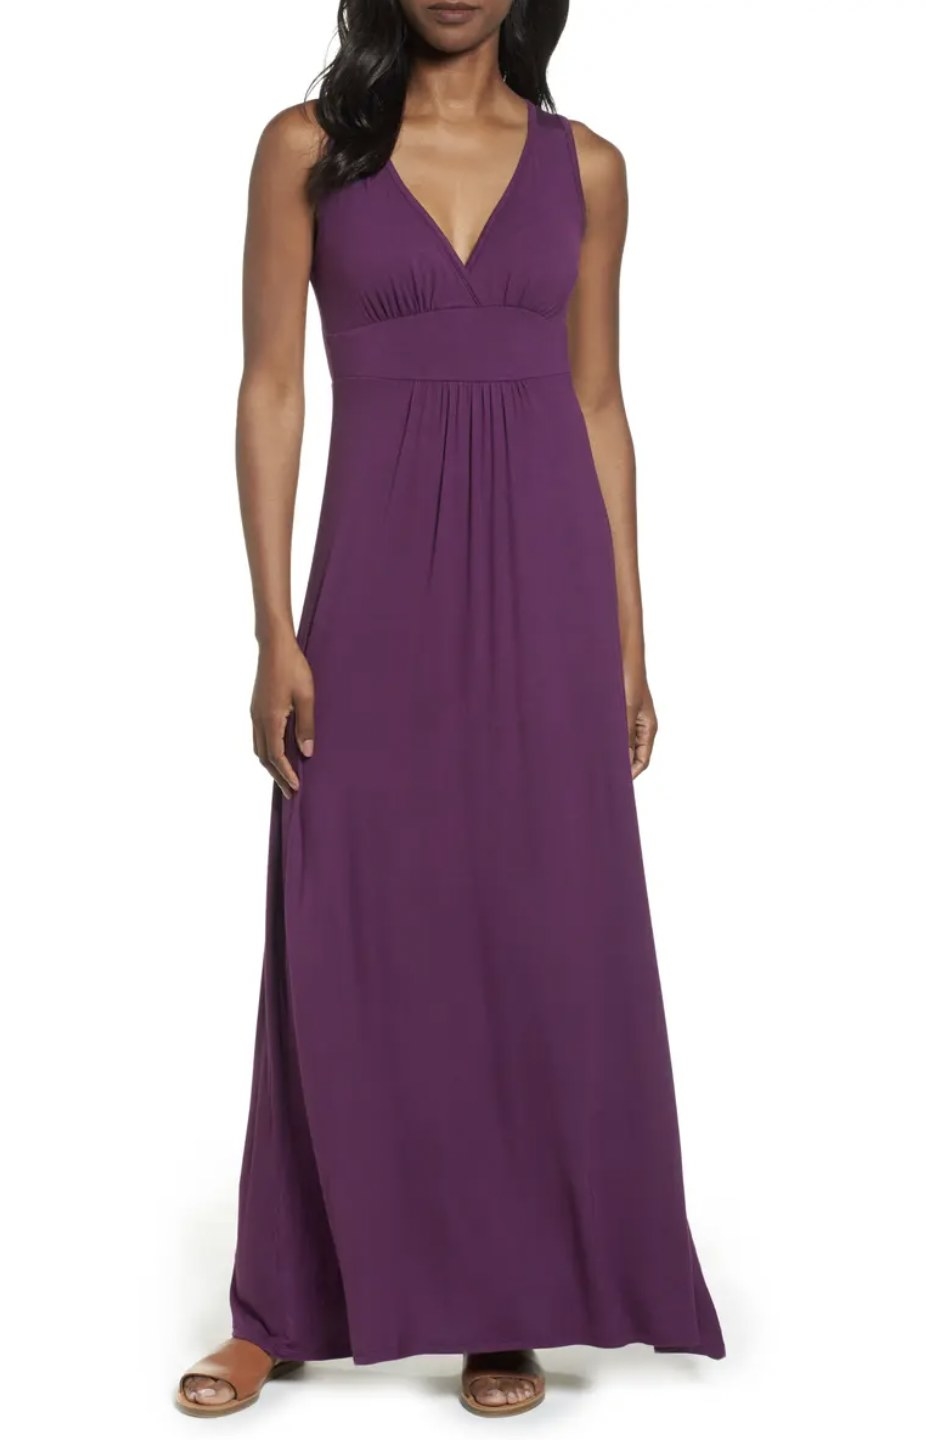 Model in the deep purple dress